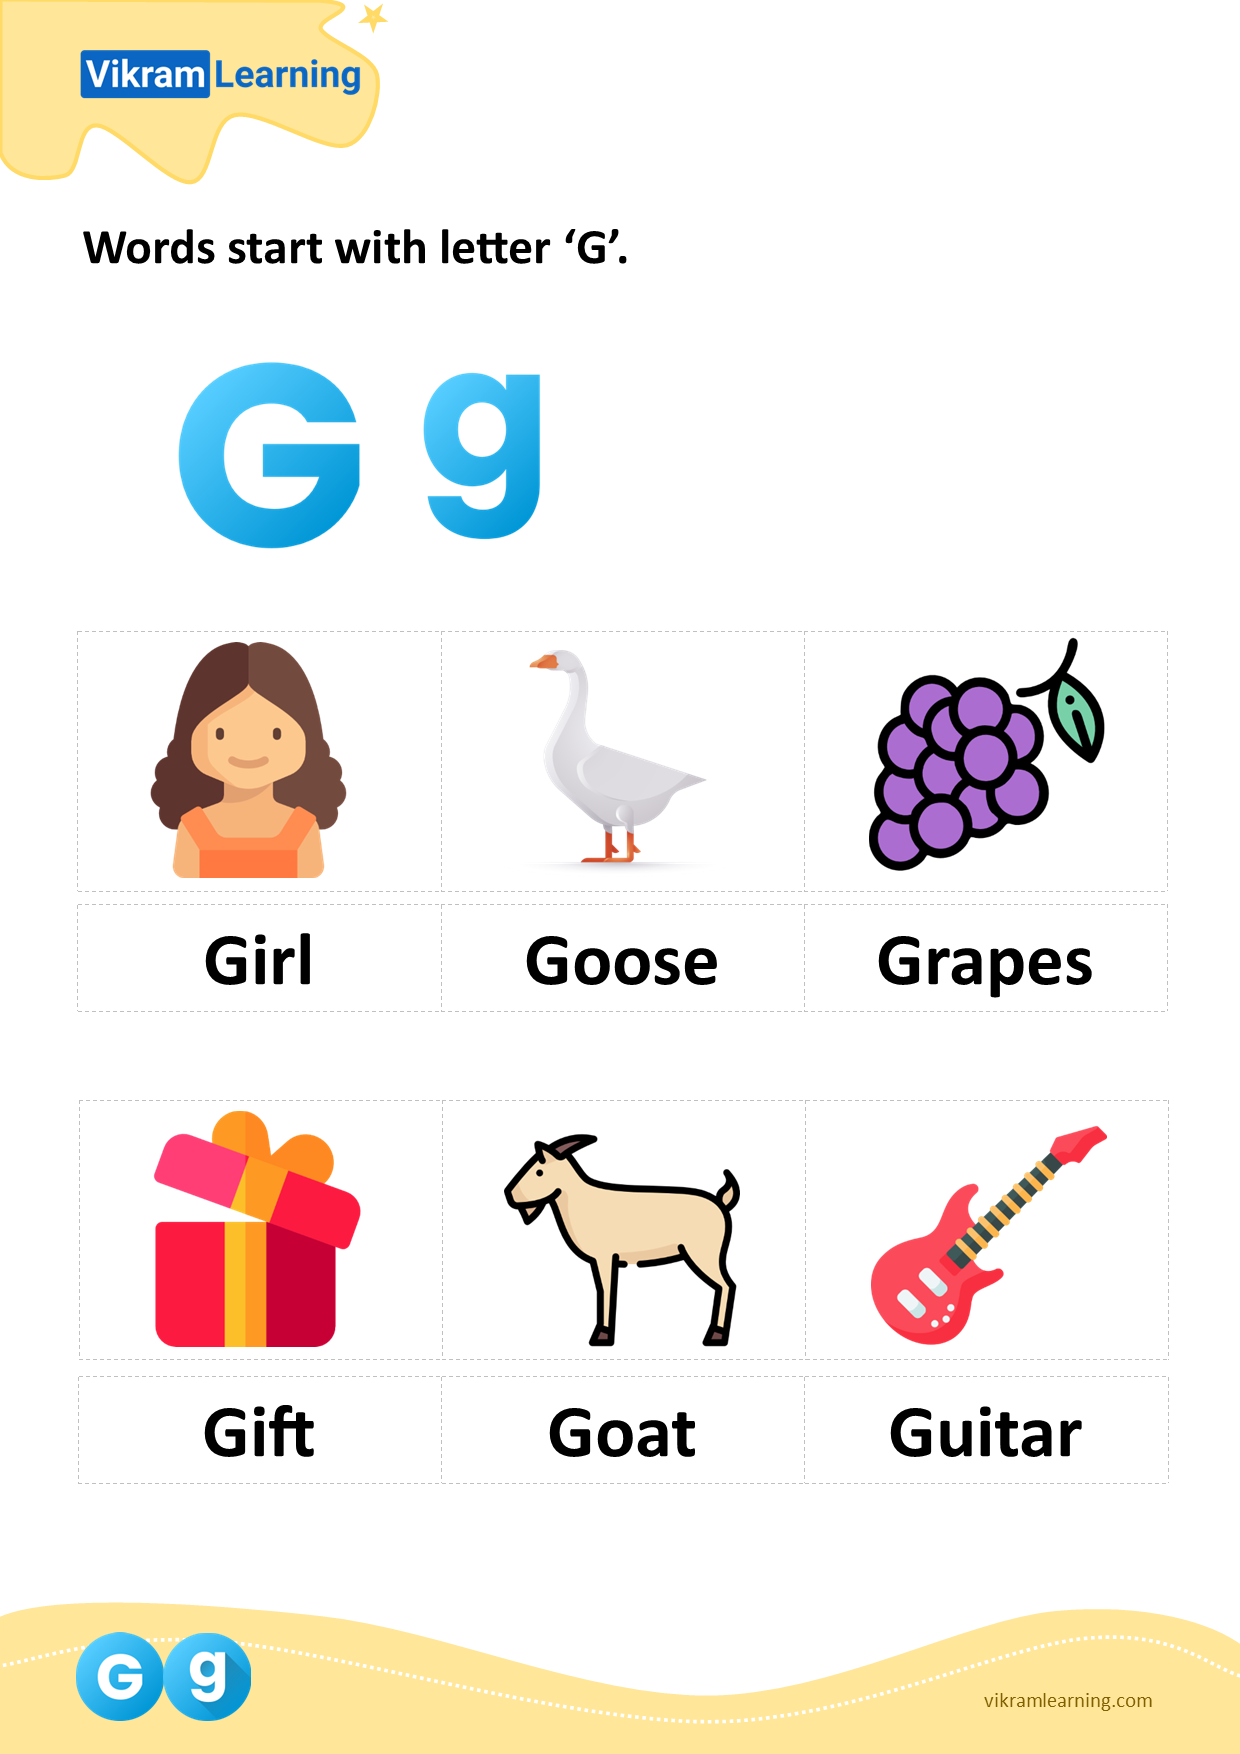 Download words start with letter 'g' worksheets | vikramlearning.com